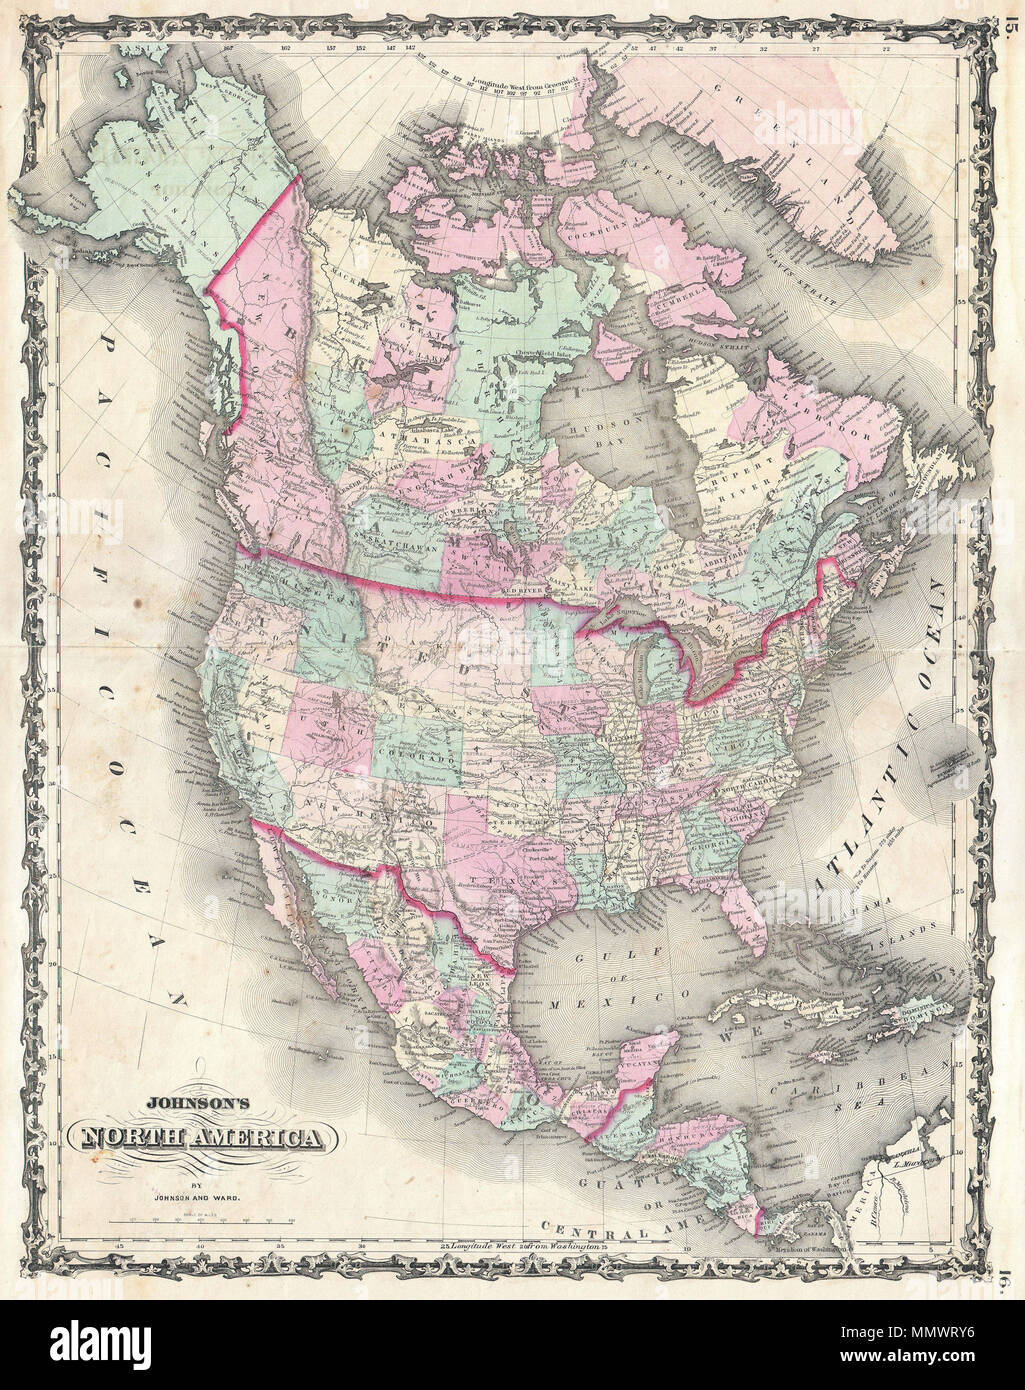 . Anglais : un bel exemple de A. J. Johnson, 1862 Carte de l'Amérique du Nord. Offre un aperçu fascinant de l'Amérique du Nord, en particulier les États-Unis, le Canada et le Mexique, juste après le déclenchement de la guerre civile américaine. Environ 1861 membres suivre la configuration avec frontières archaïques entre le Nevada et la Californie et le Nevada et l'Utah, dont la capitale est noté comme Fillmore Ville. Cette carte ne montre pas la jeune territoire confédéré de l'Arizona. Le Nebraska s'étend à l'ouest jusqu'à l'Utah et un État de Washington massive des frontières avec Dakota. Plusieurs itinéraires transcontinentaux sont show Banque D'Images